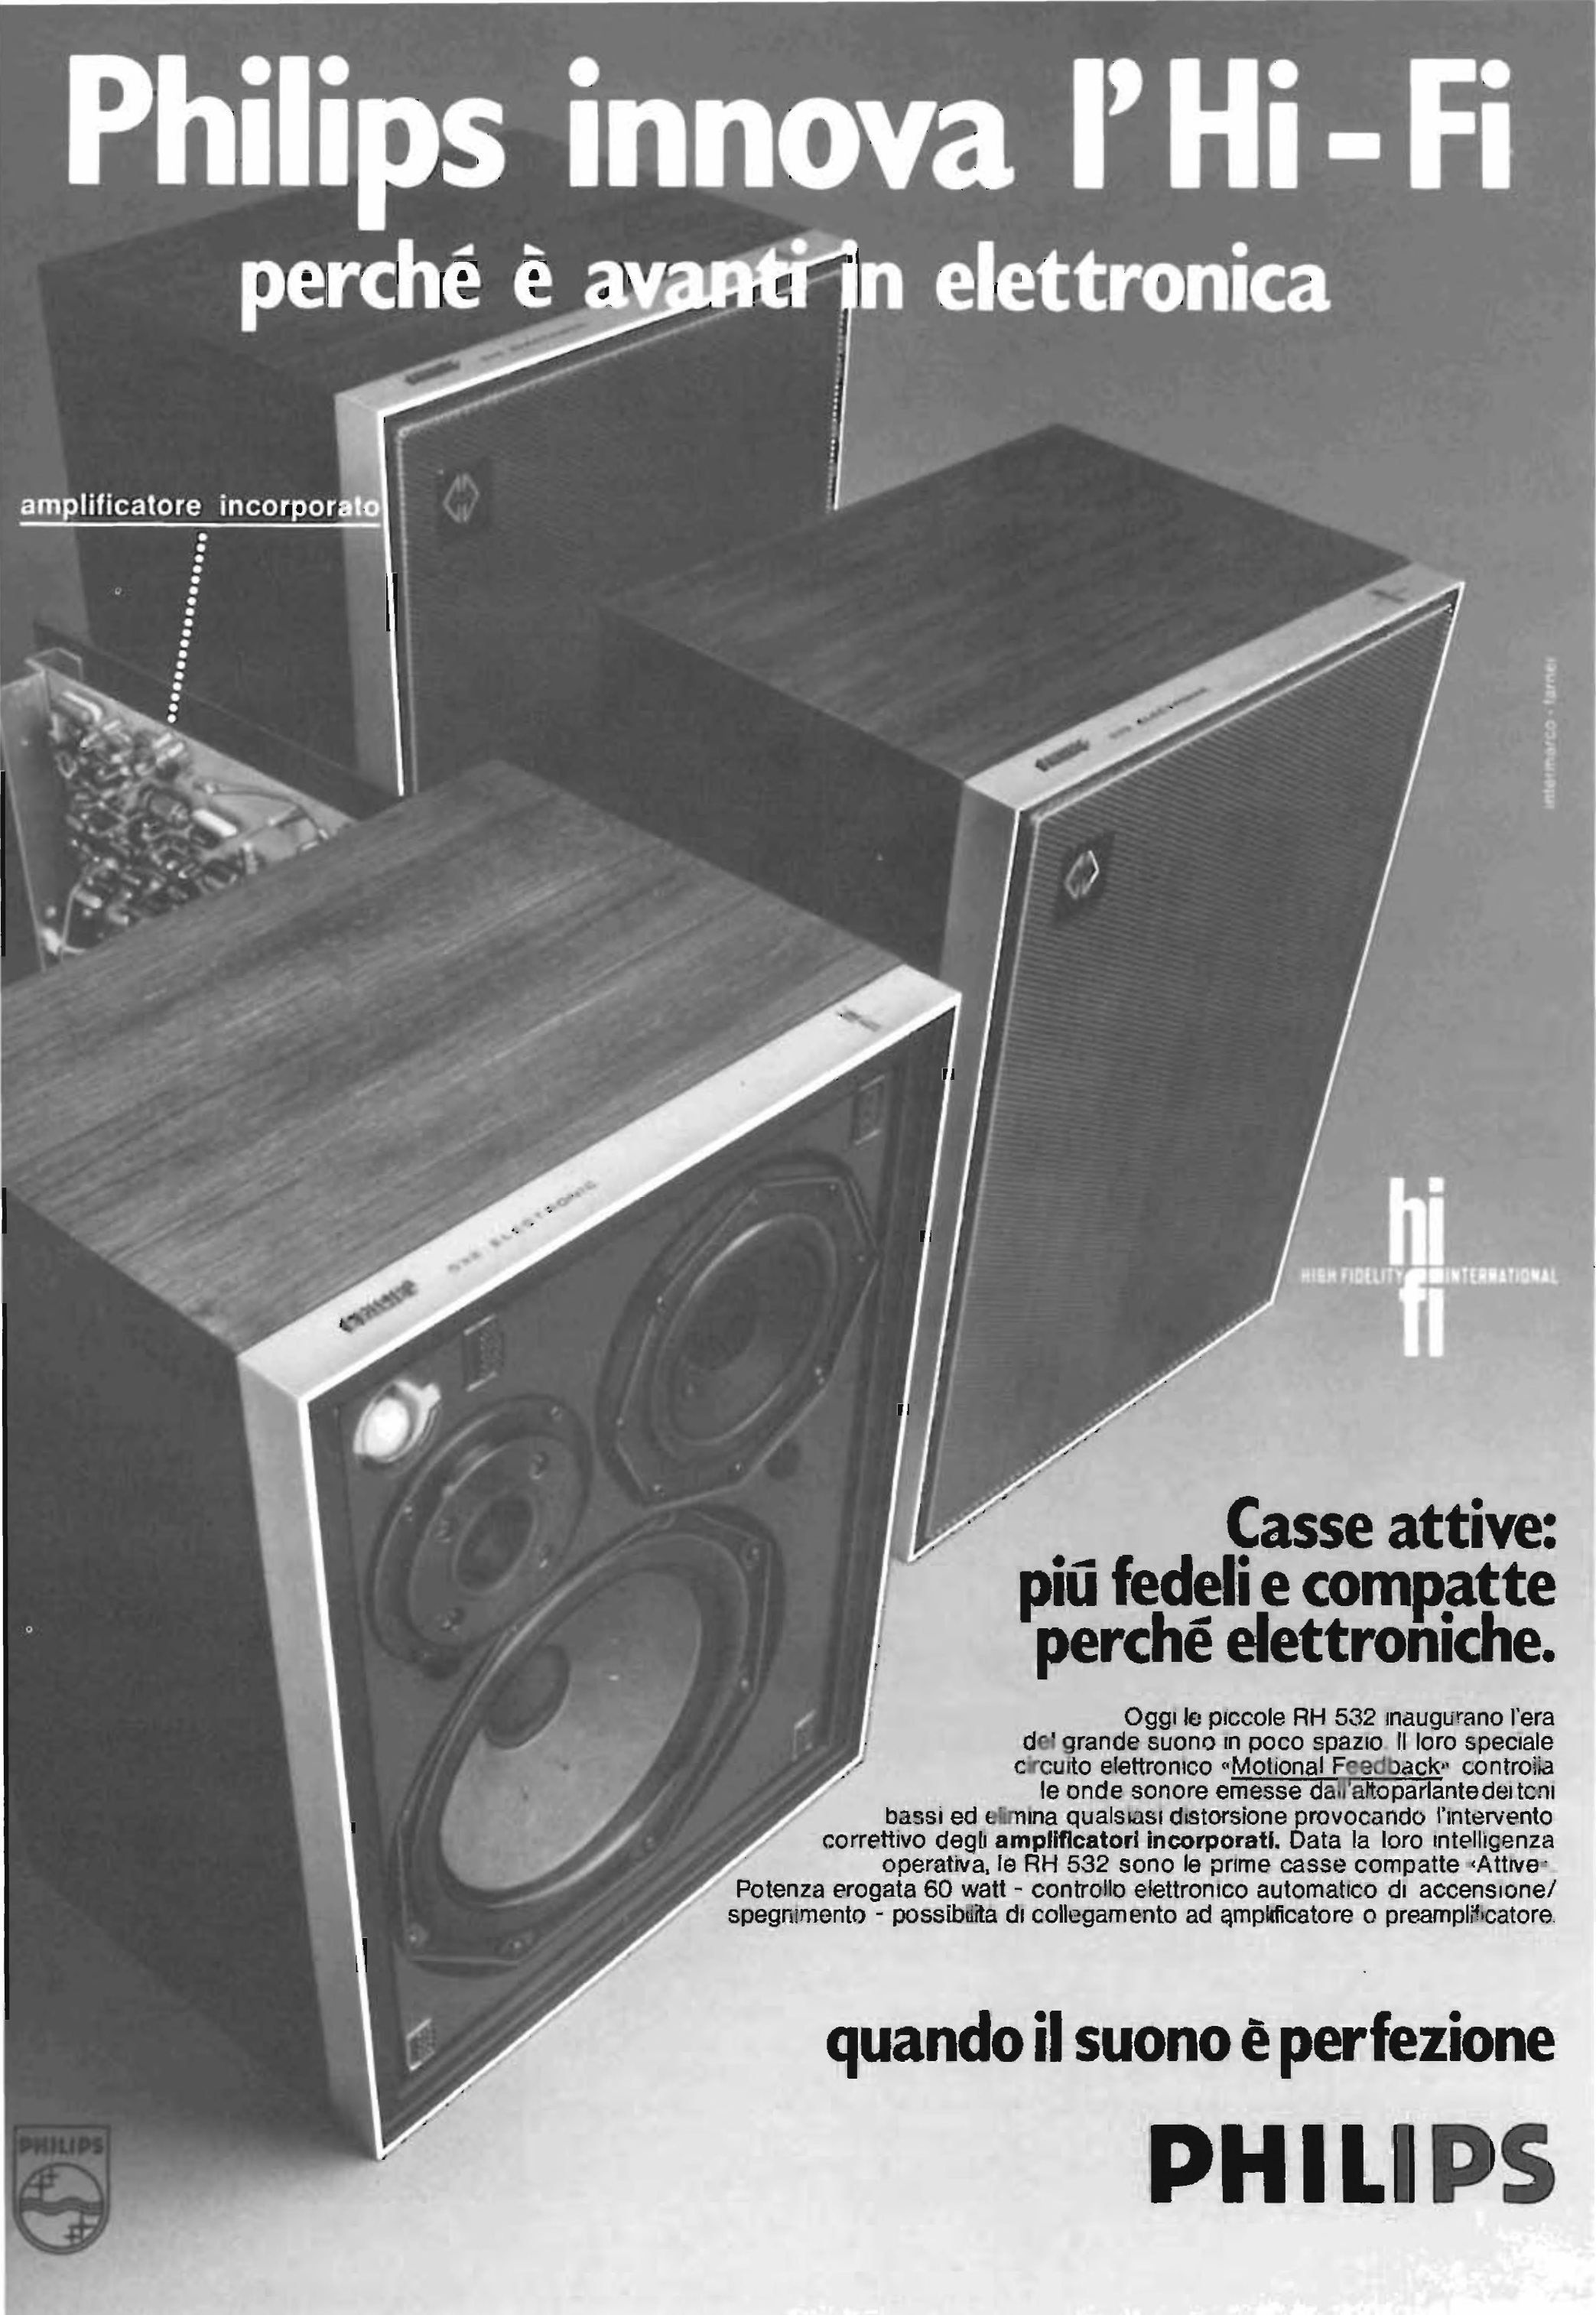 Philips 1975 47.jpg